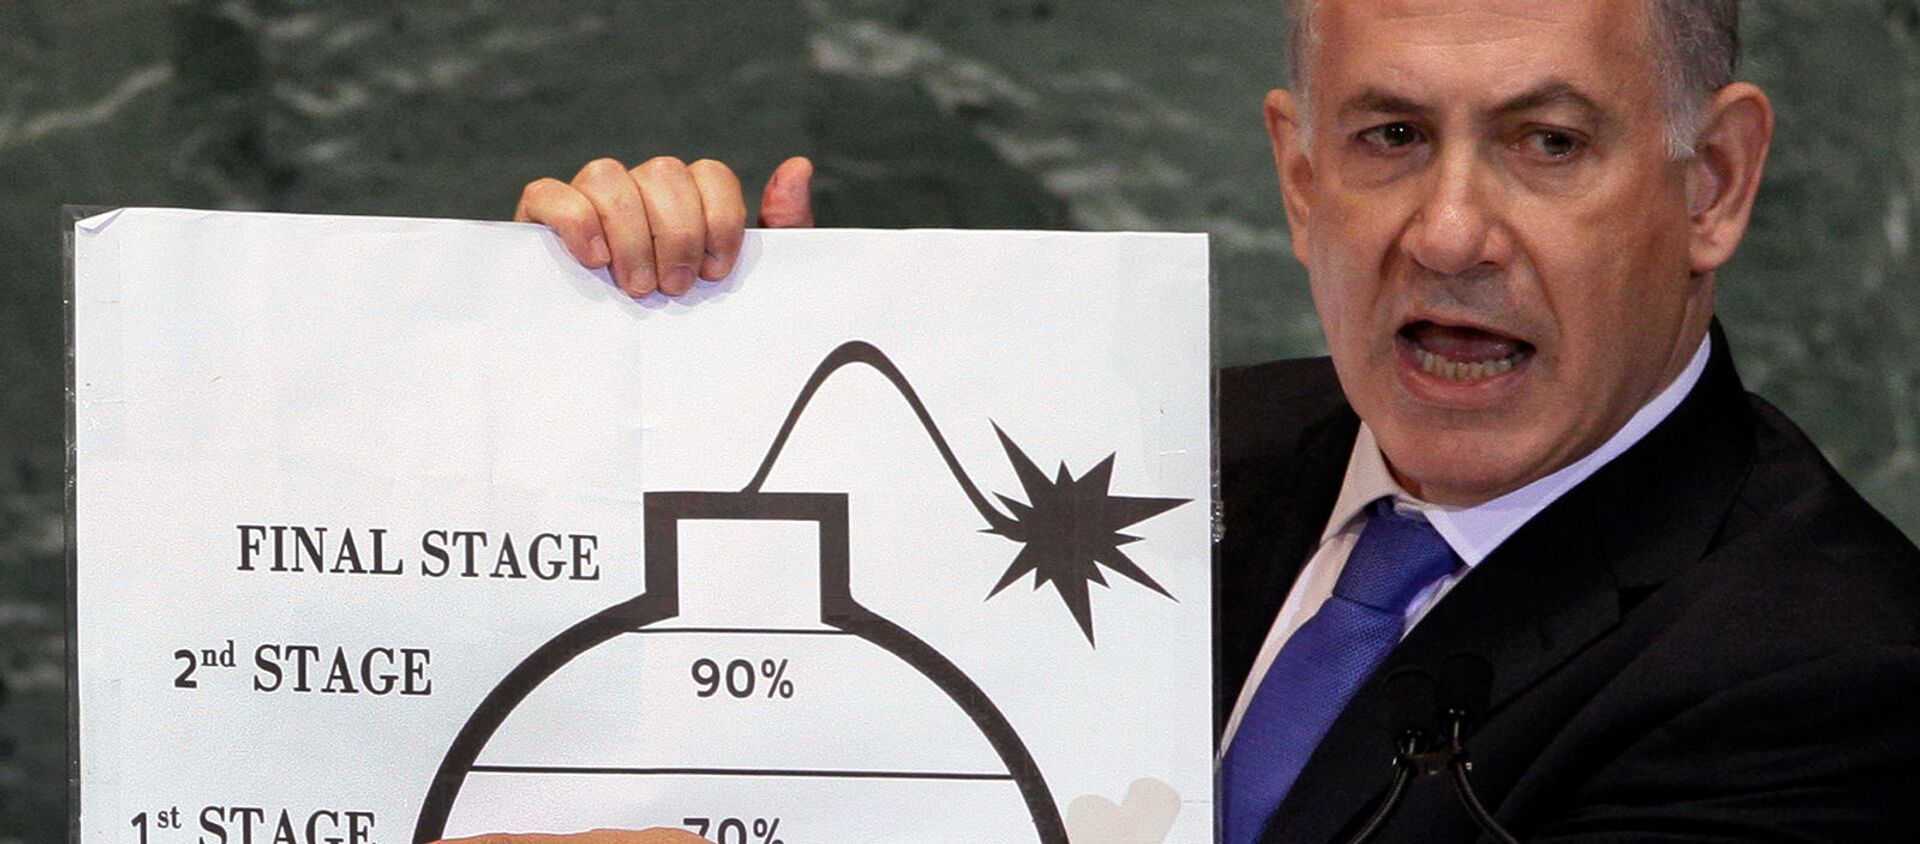 Премьер-министр Израиля Биньямин Нетаньяху демонстрирует свою озабоченность ядерными амбициями Ирана в своем выступлении на 67-й сессии Генеральной Ассамблеи ООН (27 сентября 2012). Нью-Йорк - Sputnik Армения, 1920, 03.06.2021